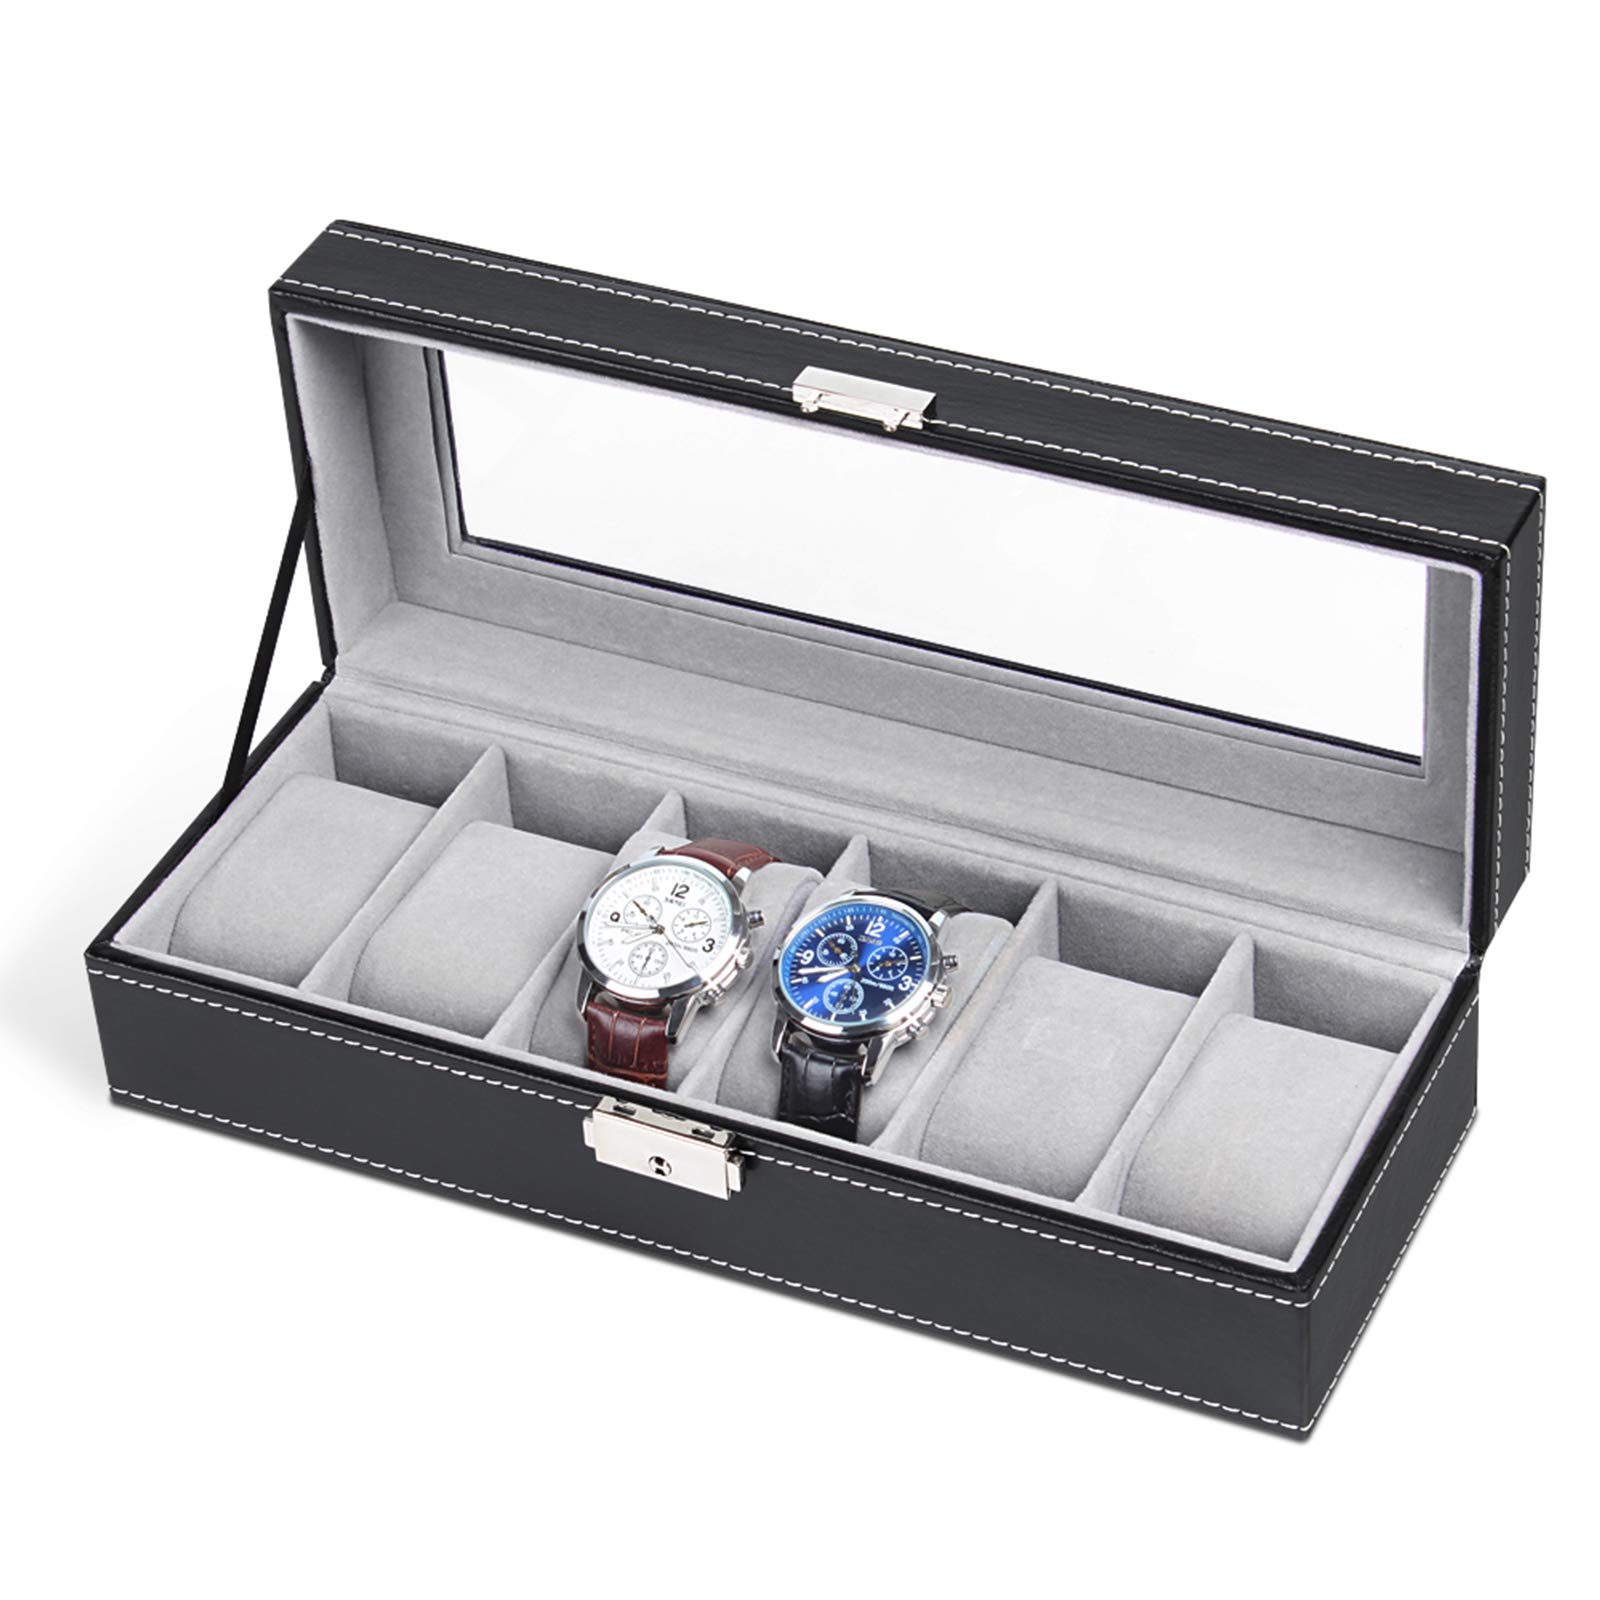 Çermê Watch Box Display Case Collection Organizer Glass Jewelry Storage